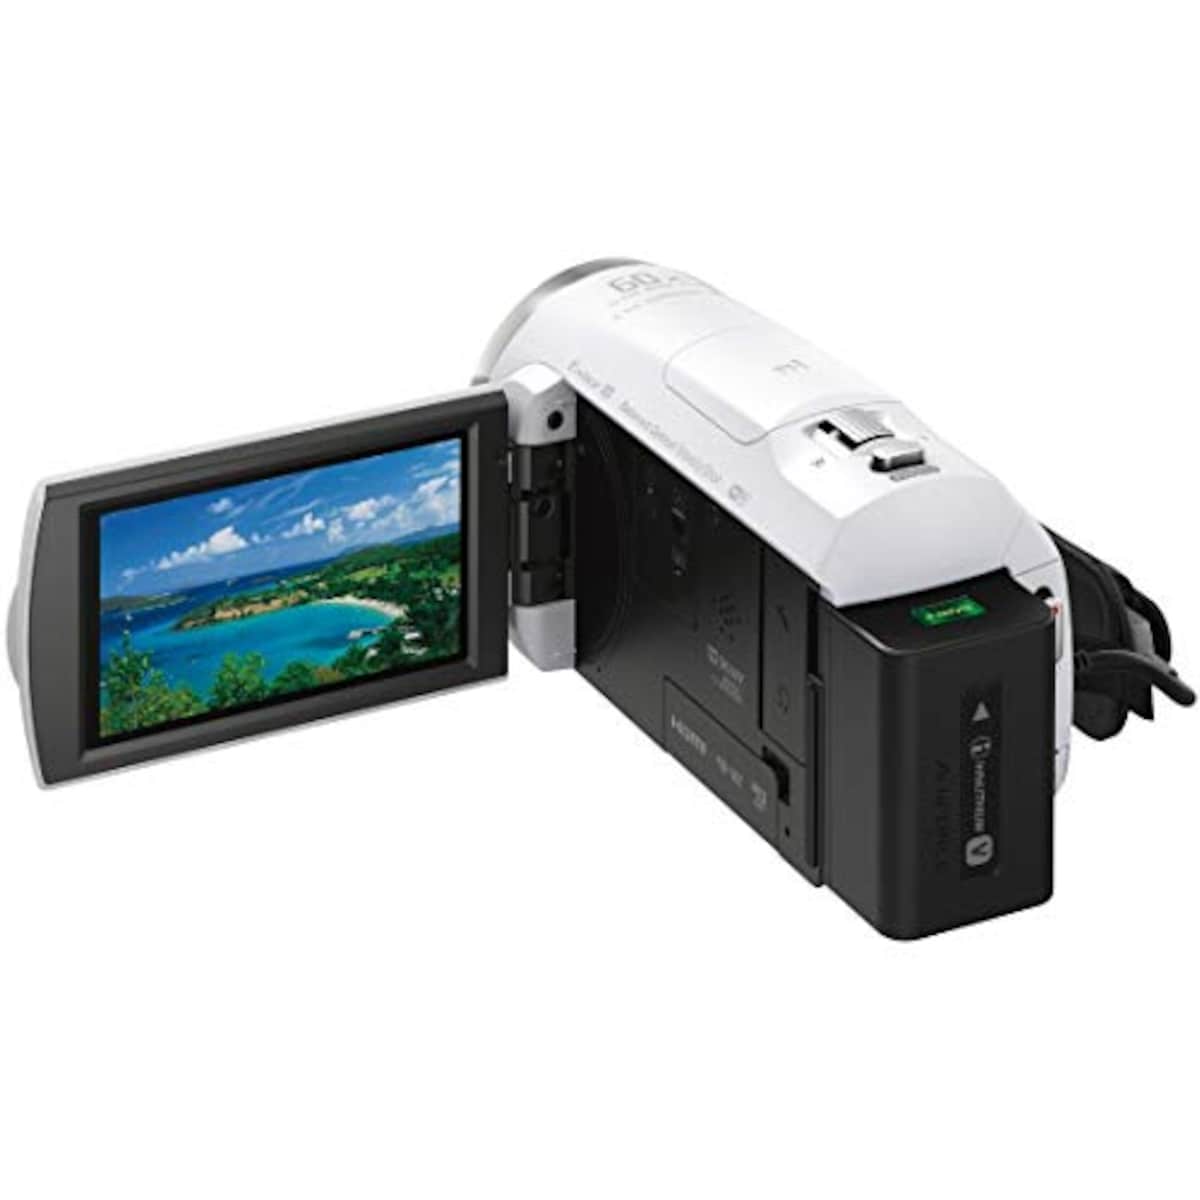  【CX680 と ケース&ストラップ セット】 大切なカメラをキズや汚れからガードしたい方に。HDR-CX680 ホワイト + LCS-MCS2 ライトブラウン画像11 